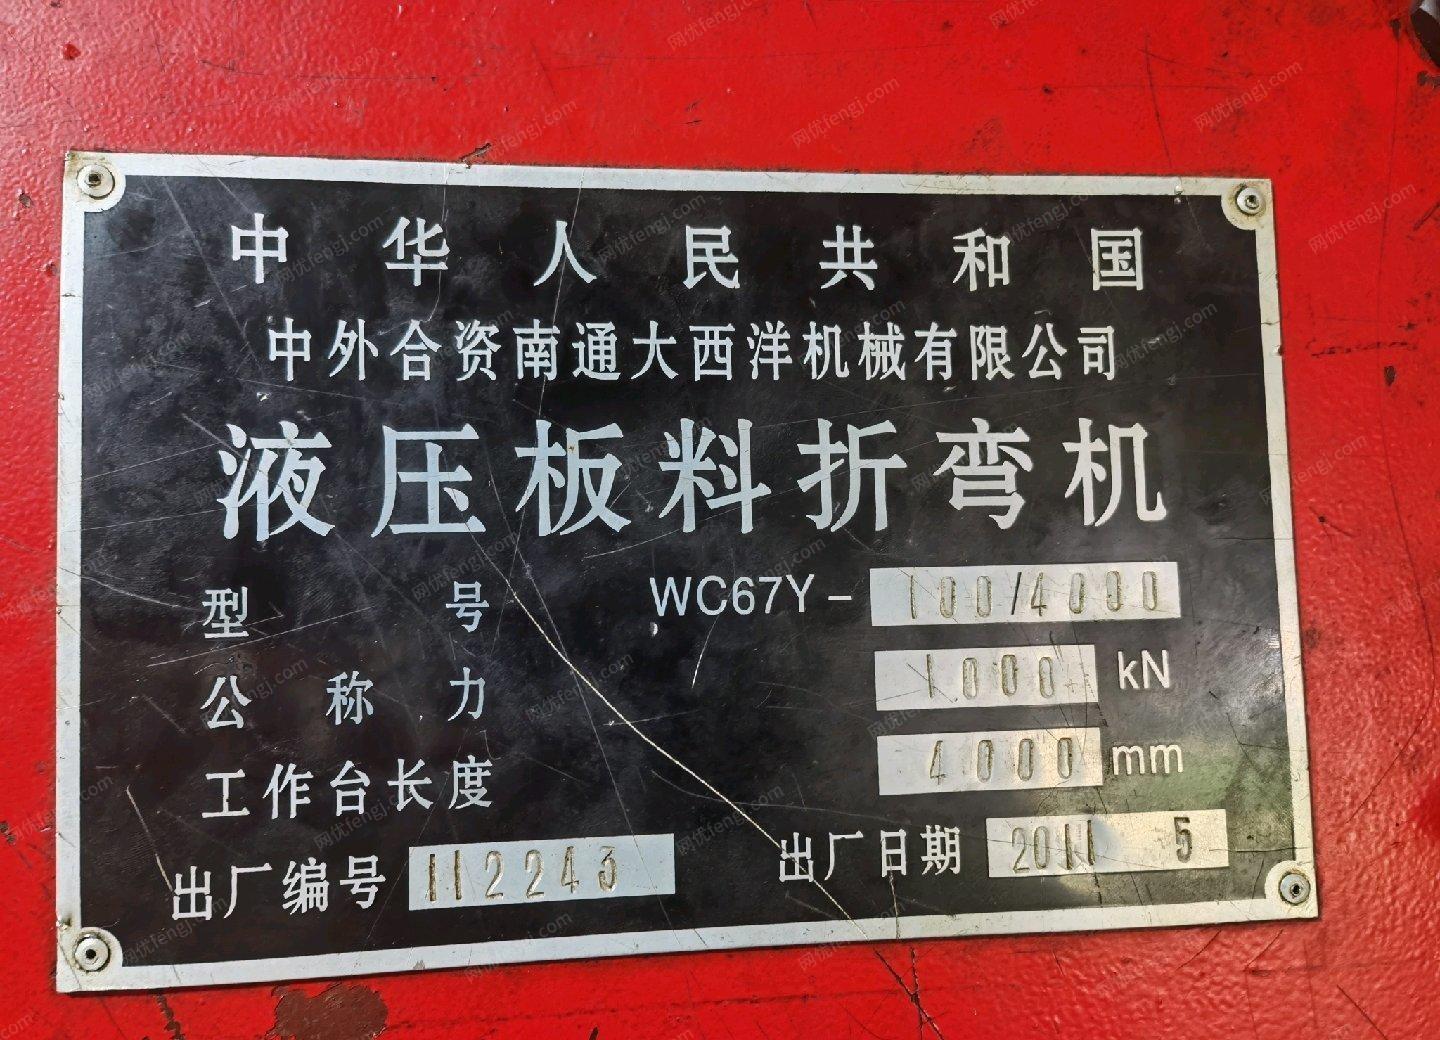 湖南衡阳门厂剪板机折弯机拉框机冲床出售